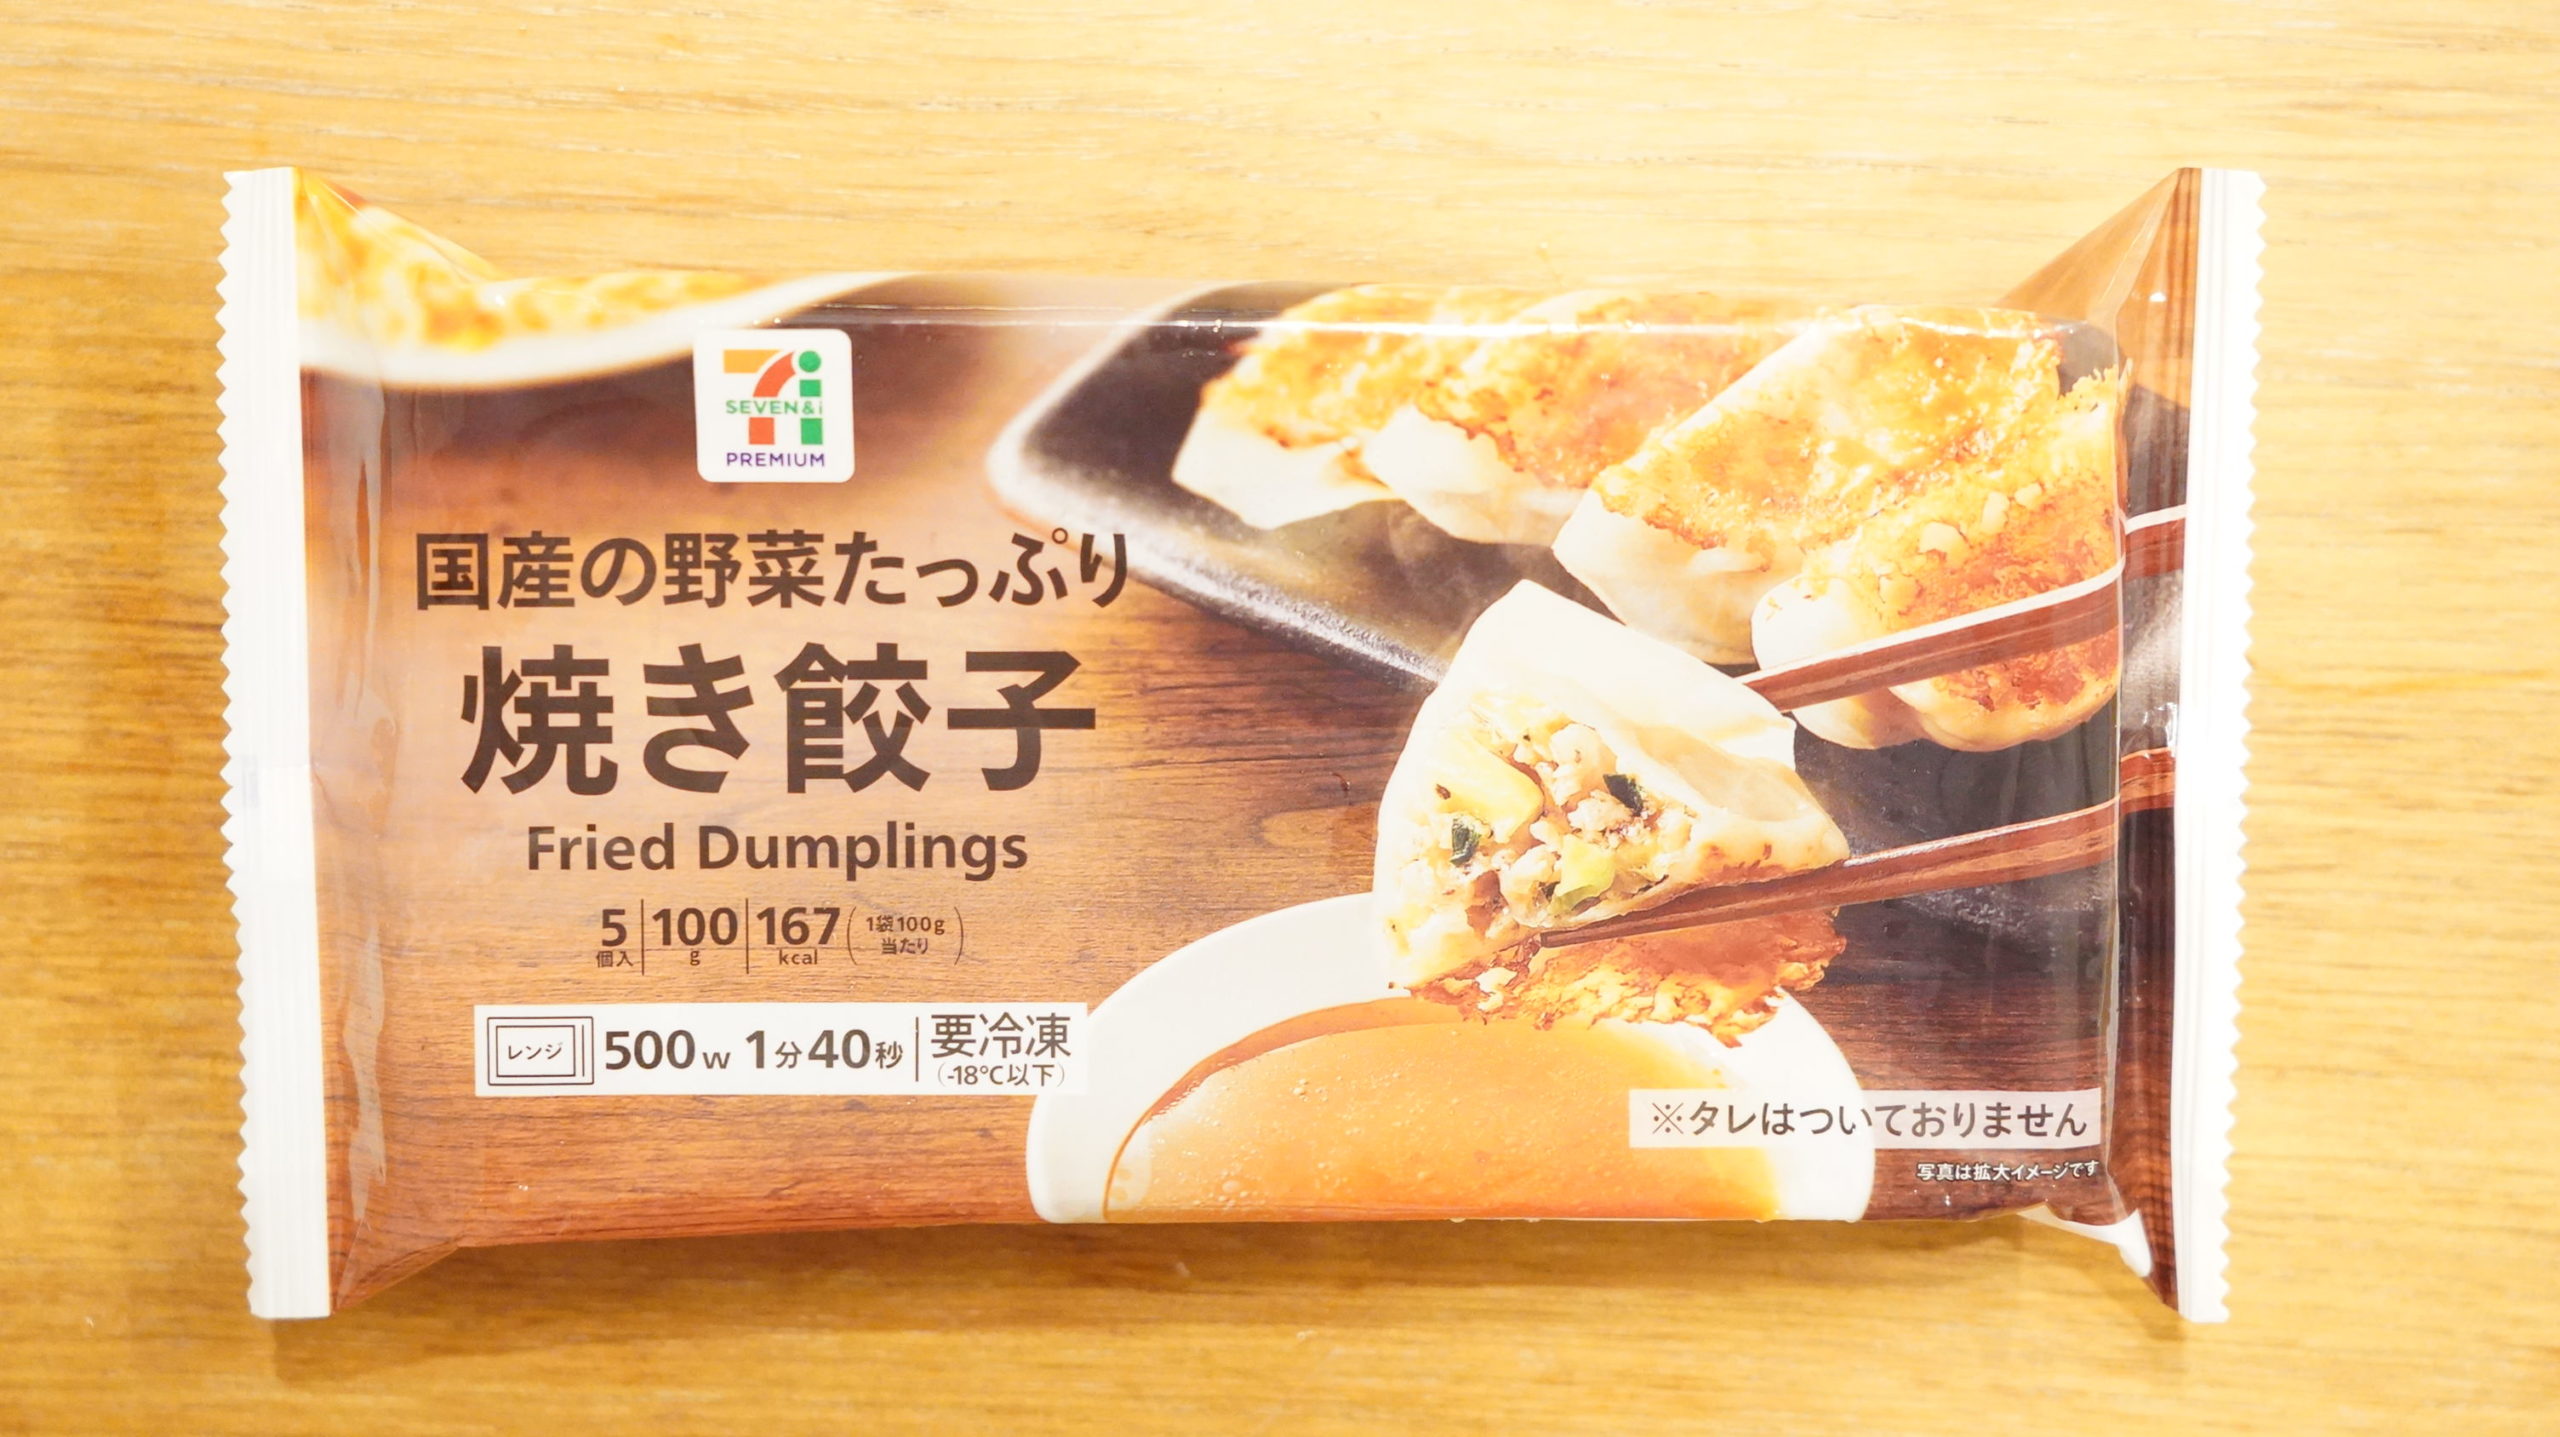 千葉県のセブン限定で売られている「国産の野菜たっぷり焼き餃子」のパッケージ写真